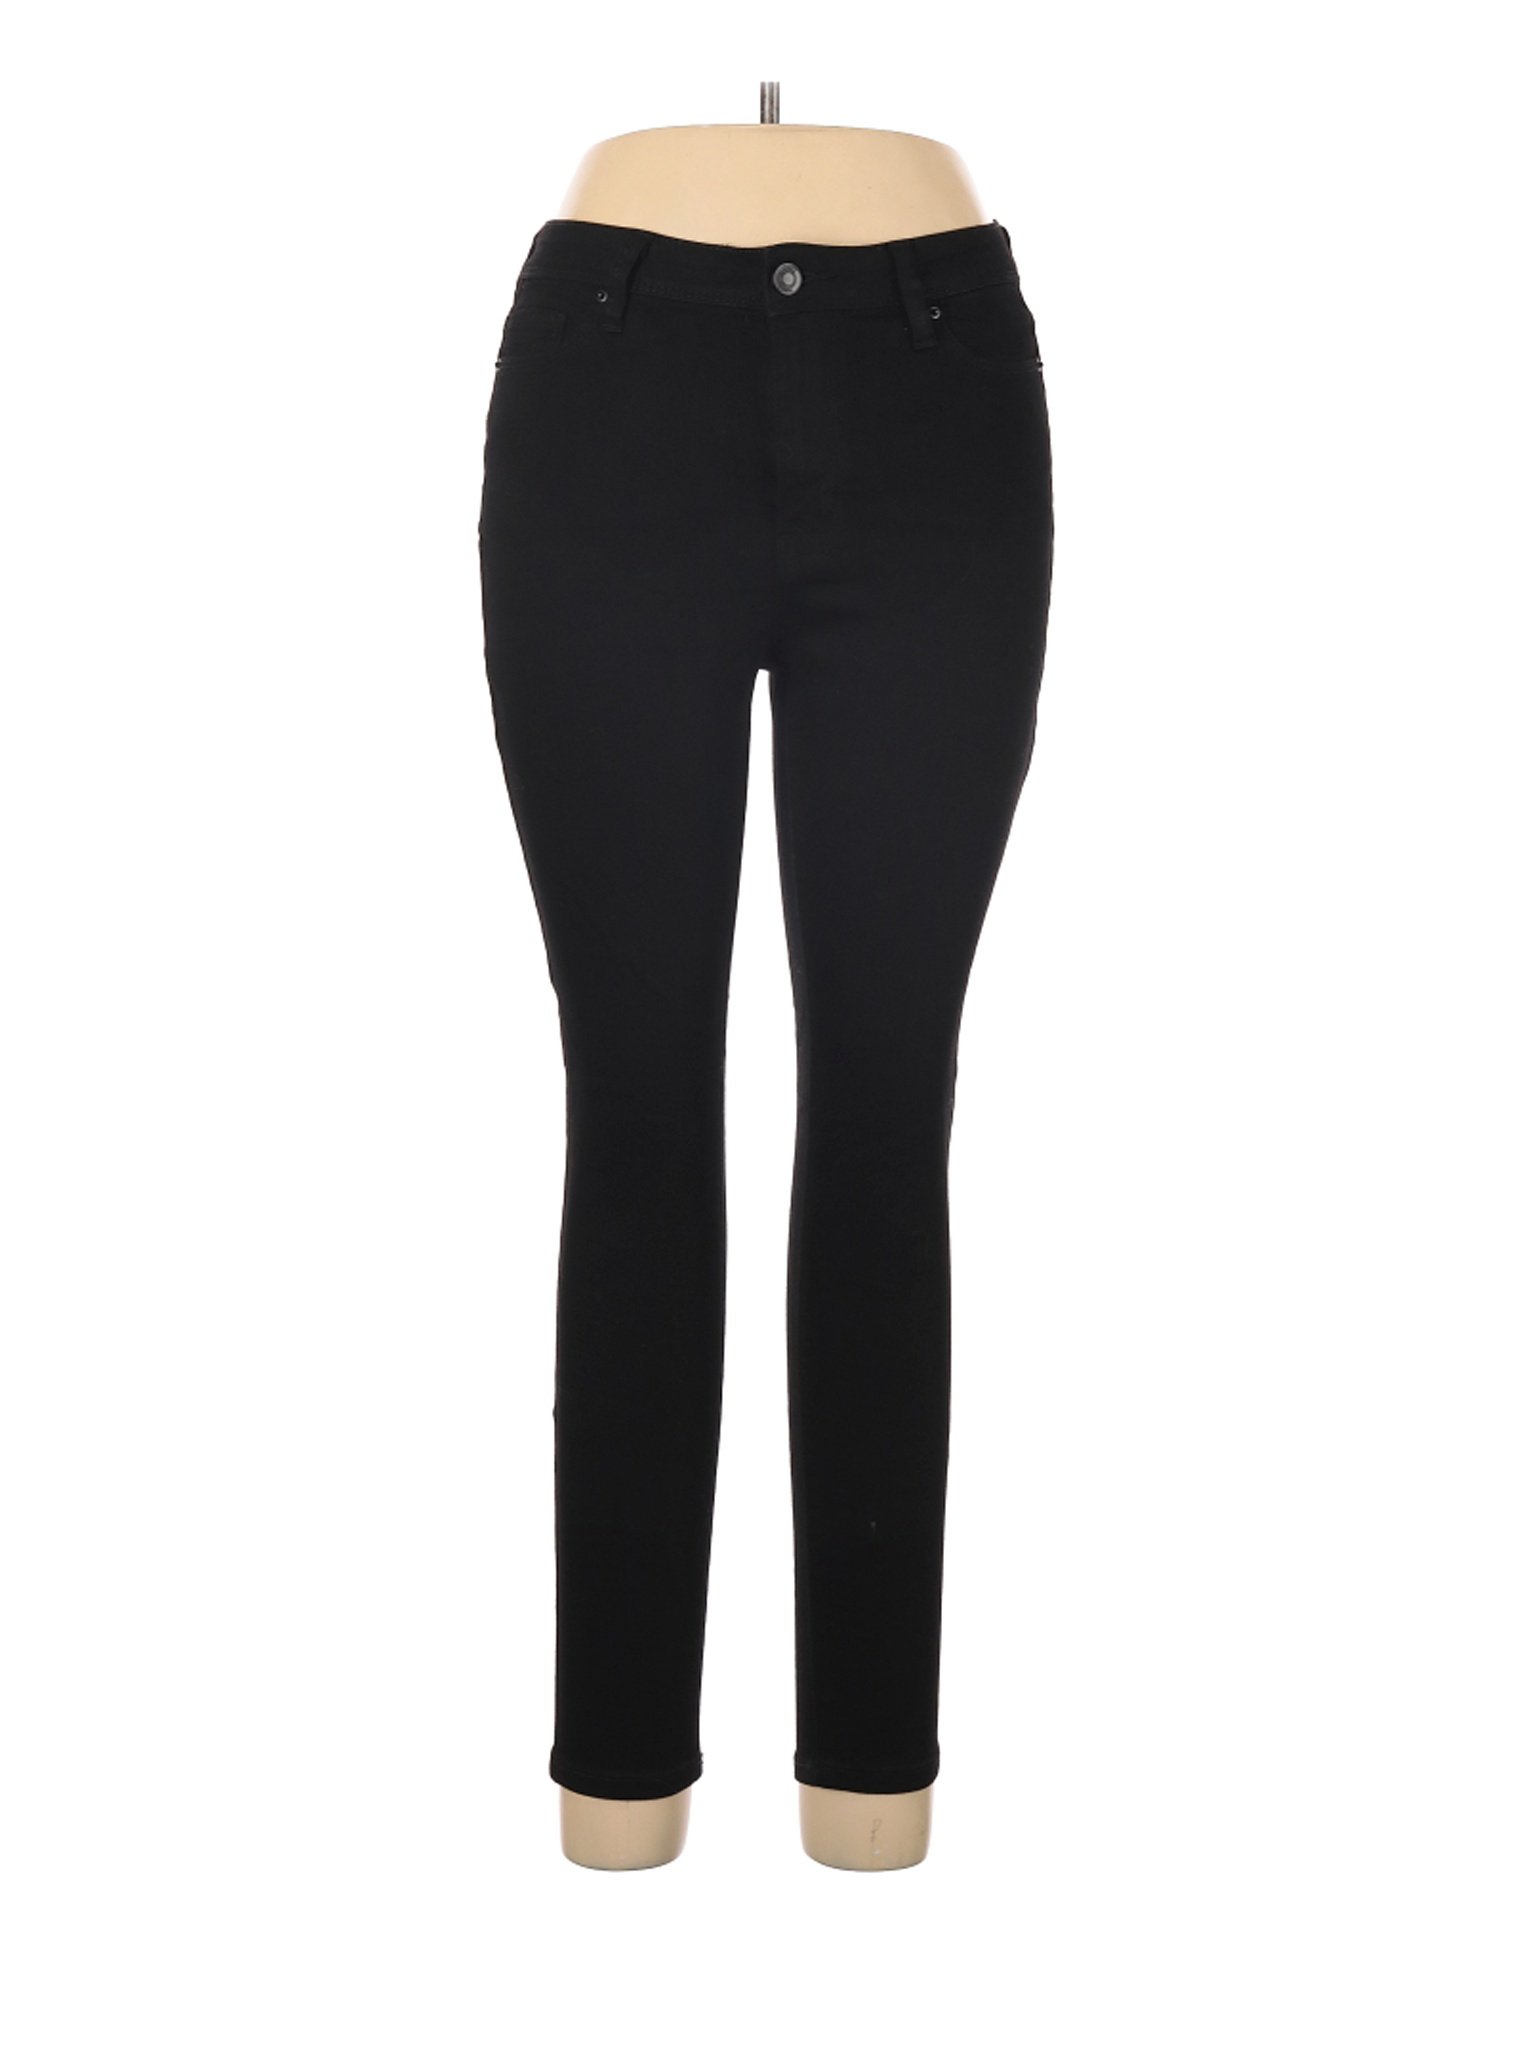 NWT Rue21 Women Black Jeans 10 | eBay